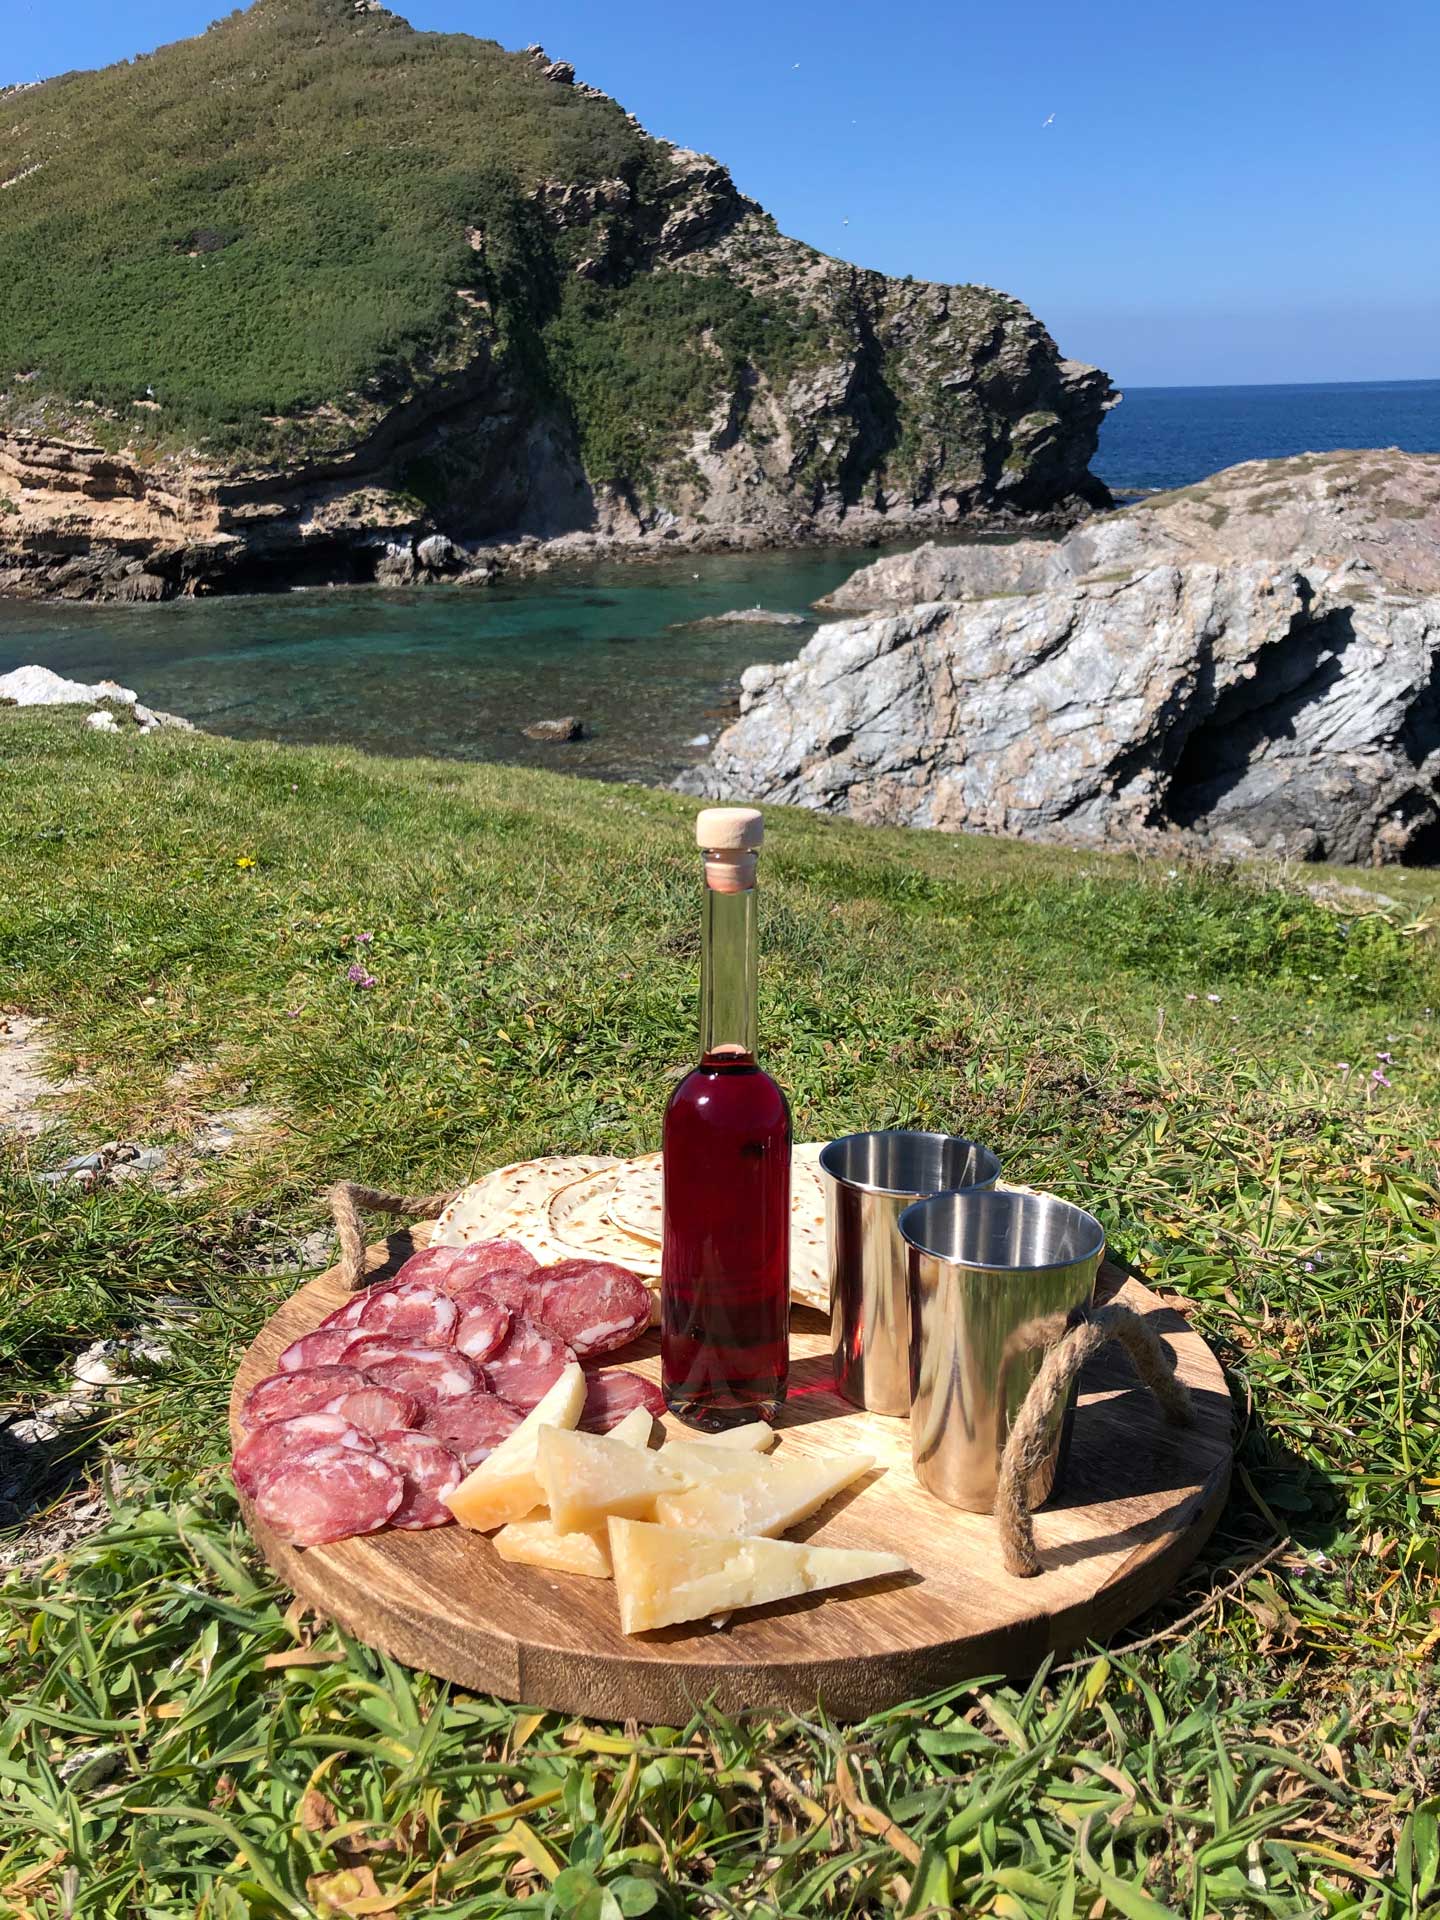 Sardinian aperitif during trekking in the territory of Alghero